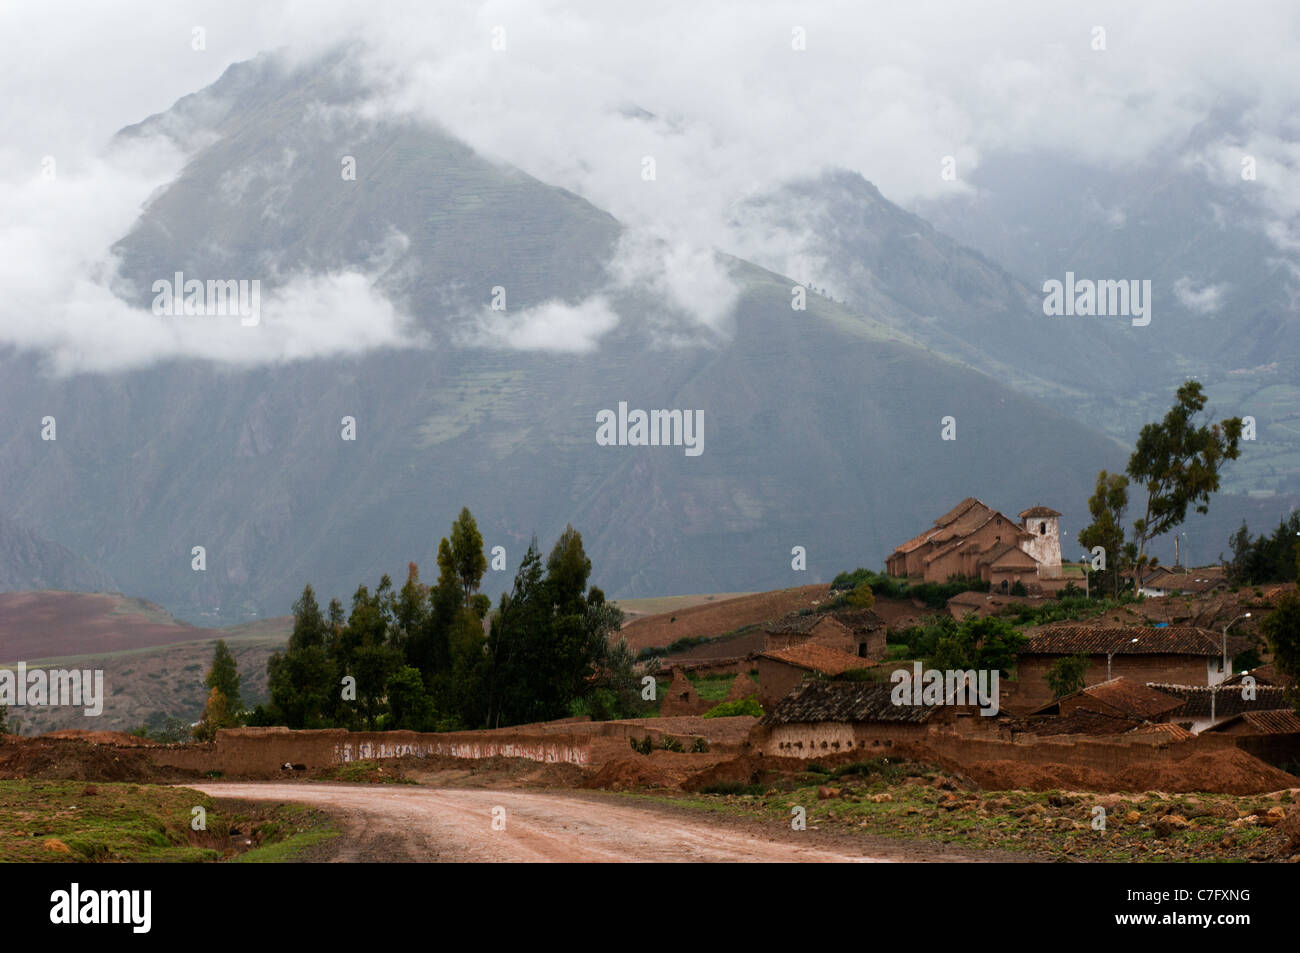 Piccolo villaggio nelle Ande. Piccole strutture contro le montagne i cui vertici sono coperti dalle nuvole. Foto Stock